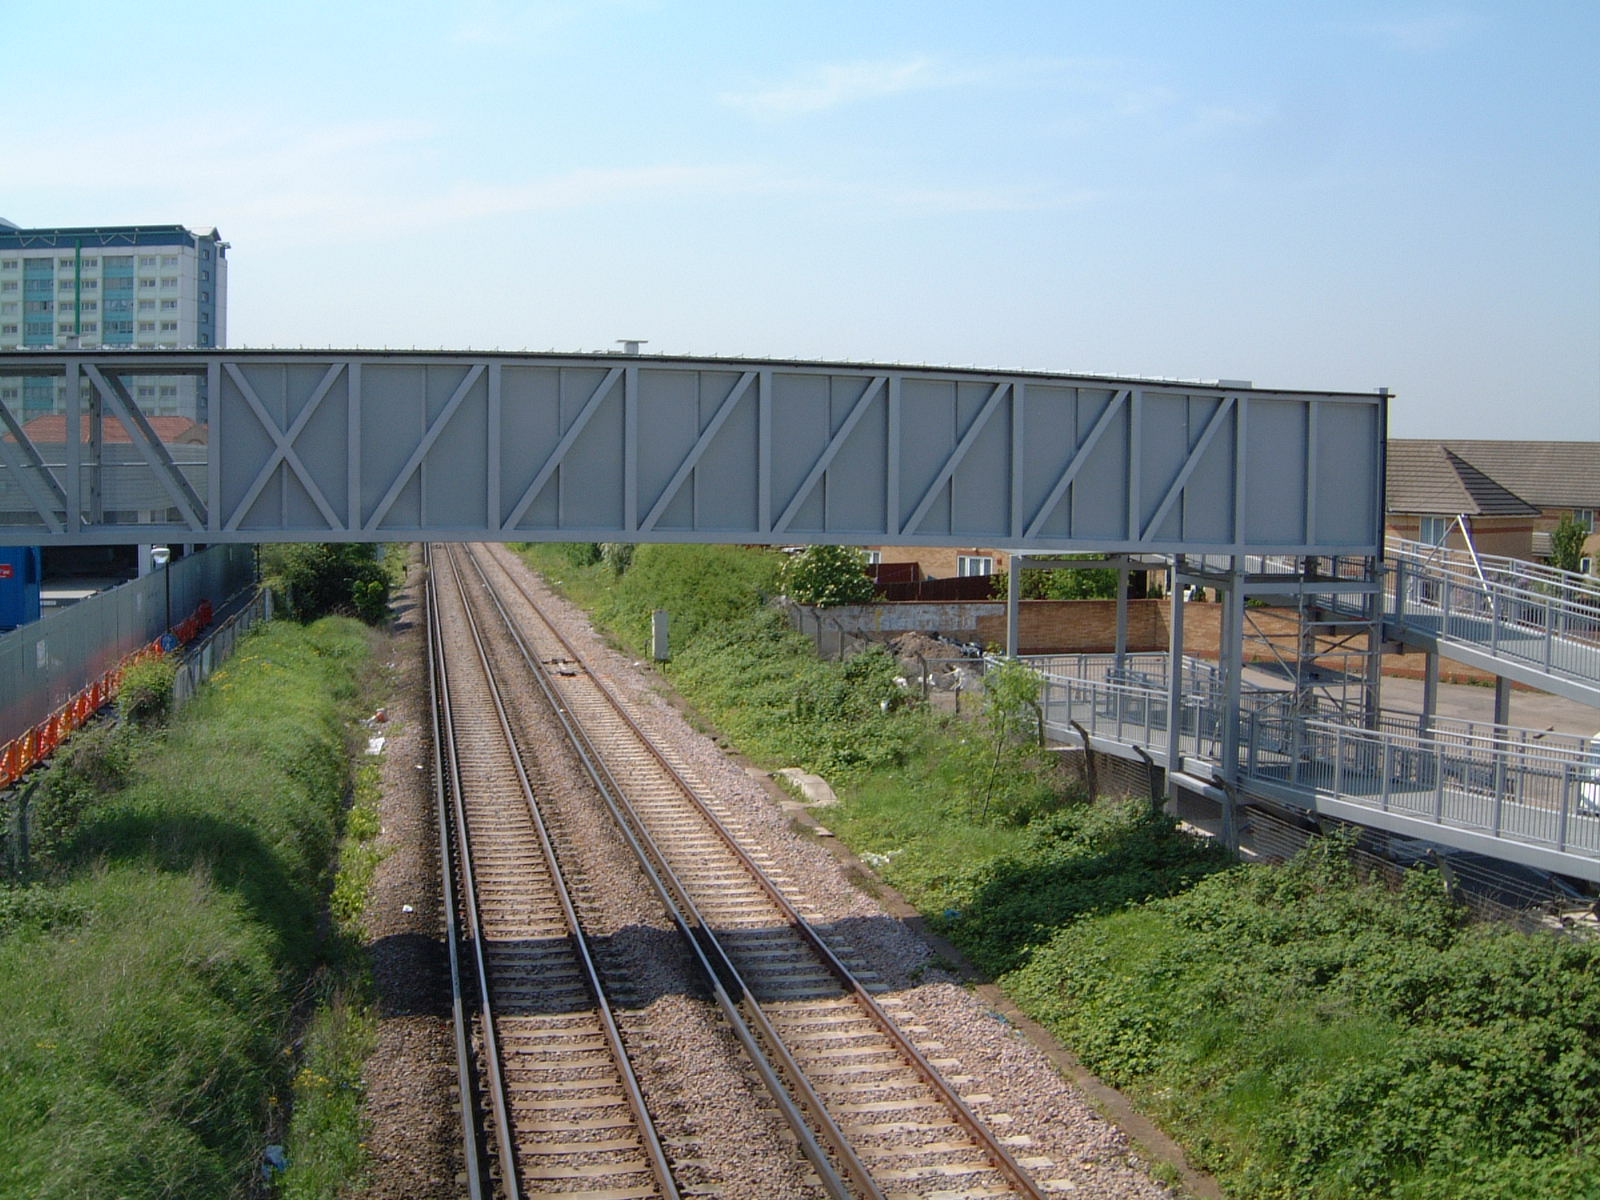 Railway footbridges, ramps and steps